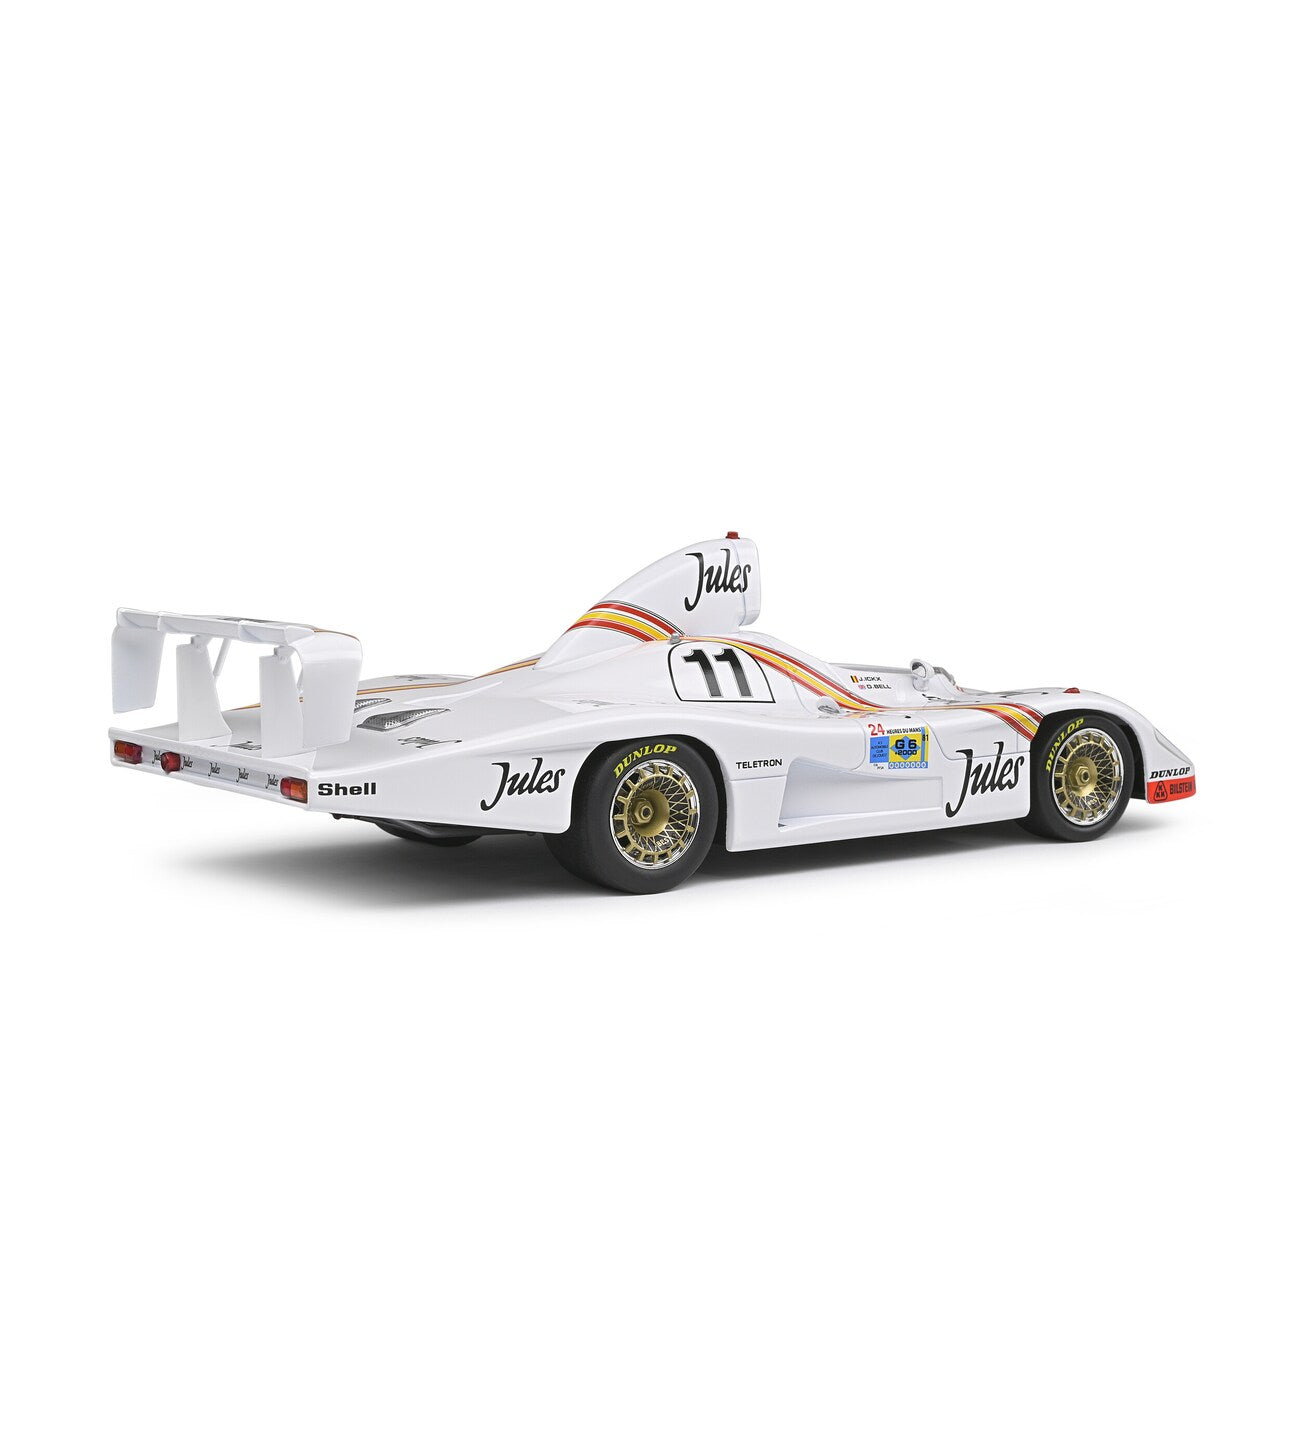 1981 Porsche 936/81 #11 Winner Le Mans 1:43 Spark diecast Scale Model